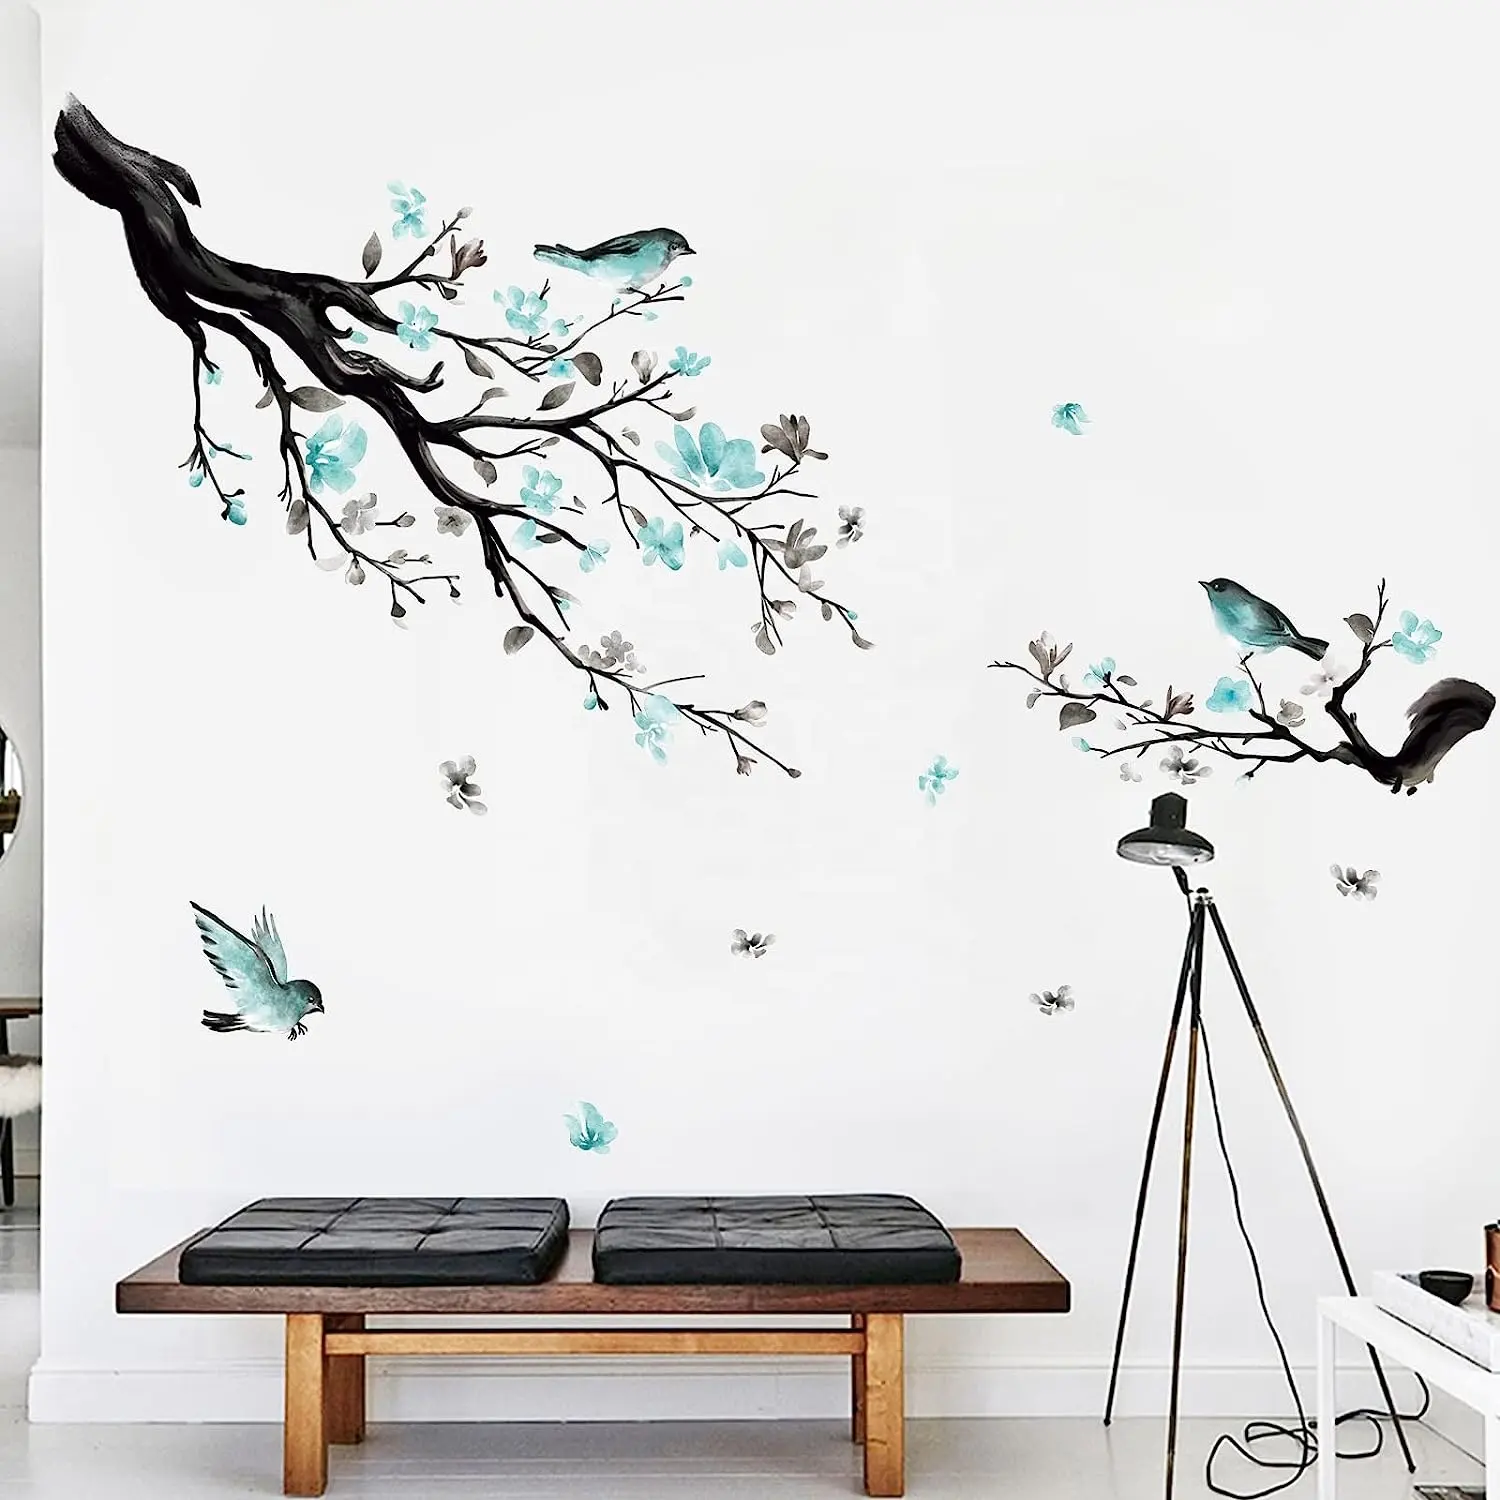 Vinyle personnalisé brillant mat stratification décoration murale autocollants arbre printemps stickers muraux pour la maison